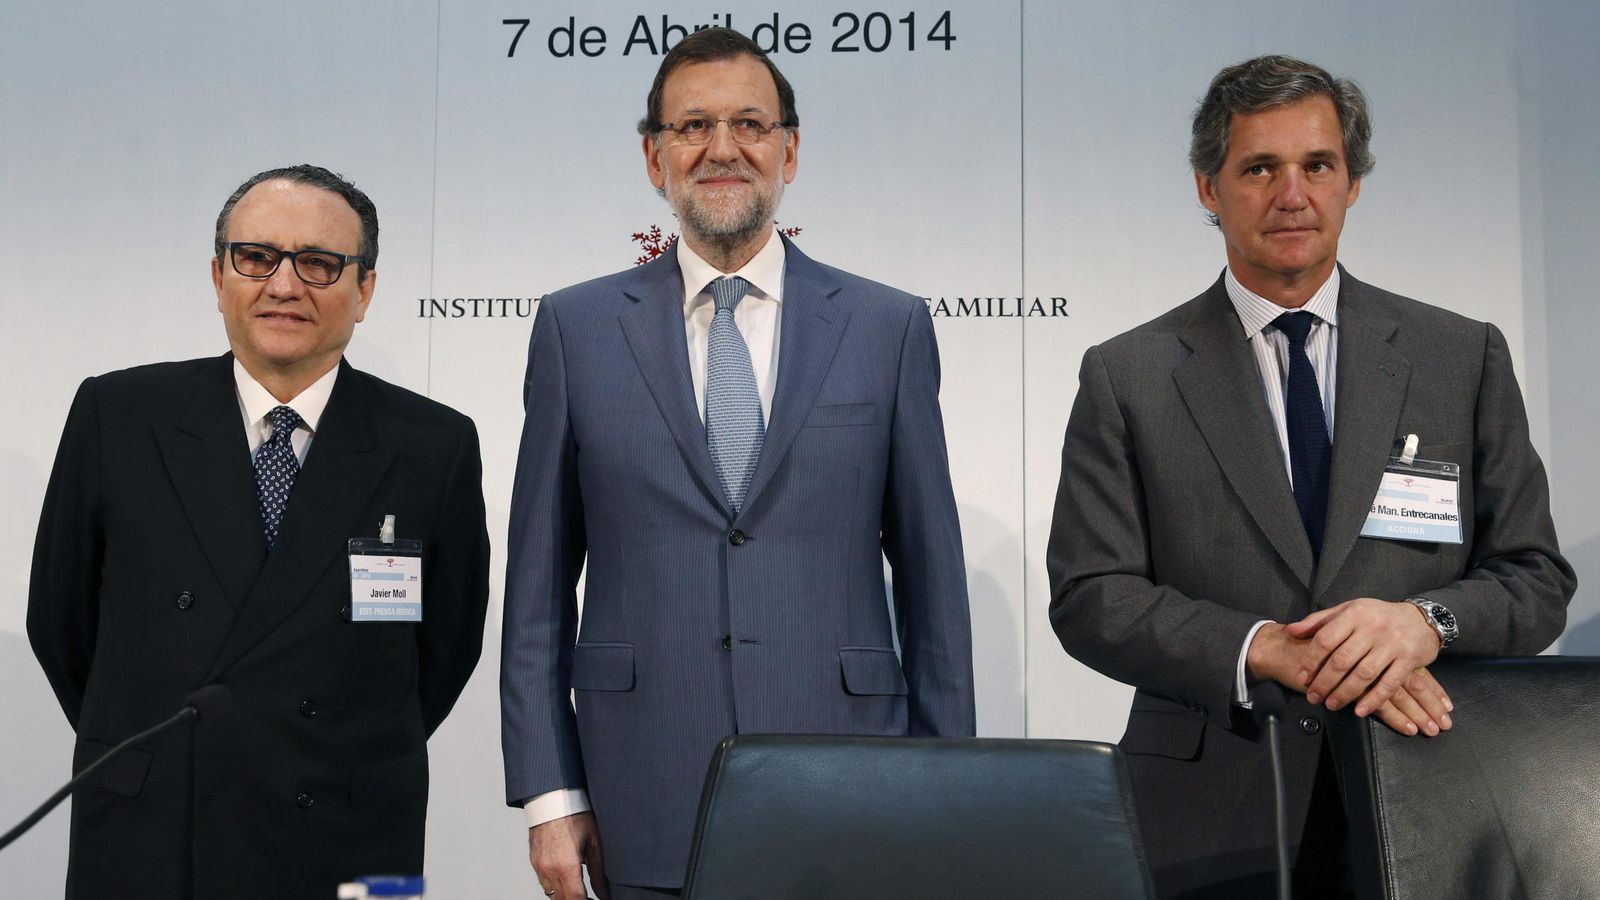 Foto: El presidente en funciones, Mariano Rajoy, junto al presidente del IEF, Javier Moll, y su predecesor, José Manuel Entrecanales. (EFE)